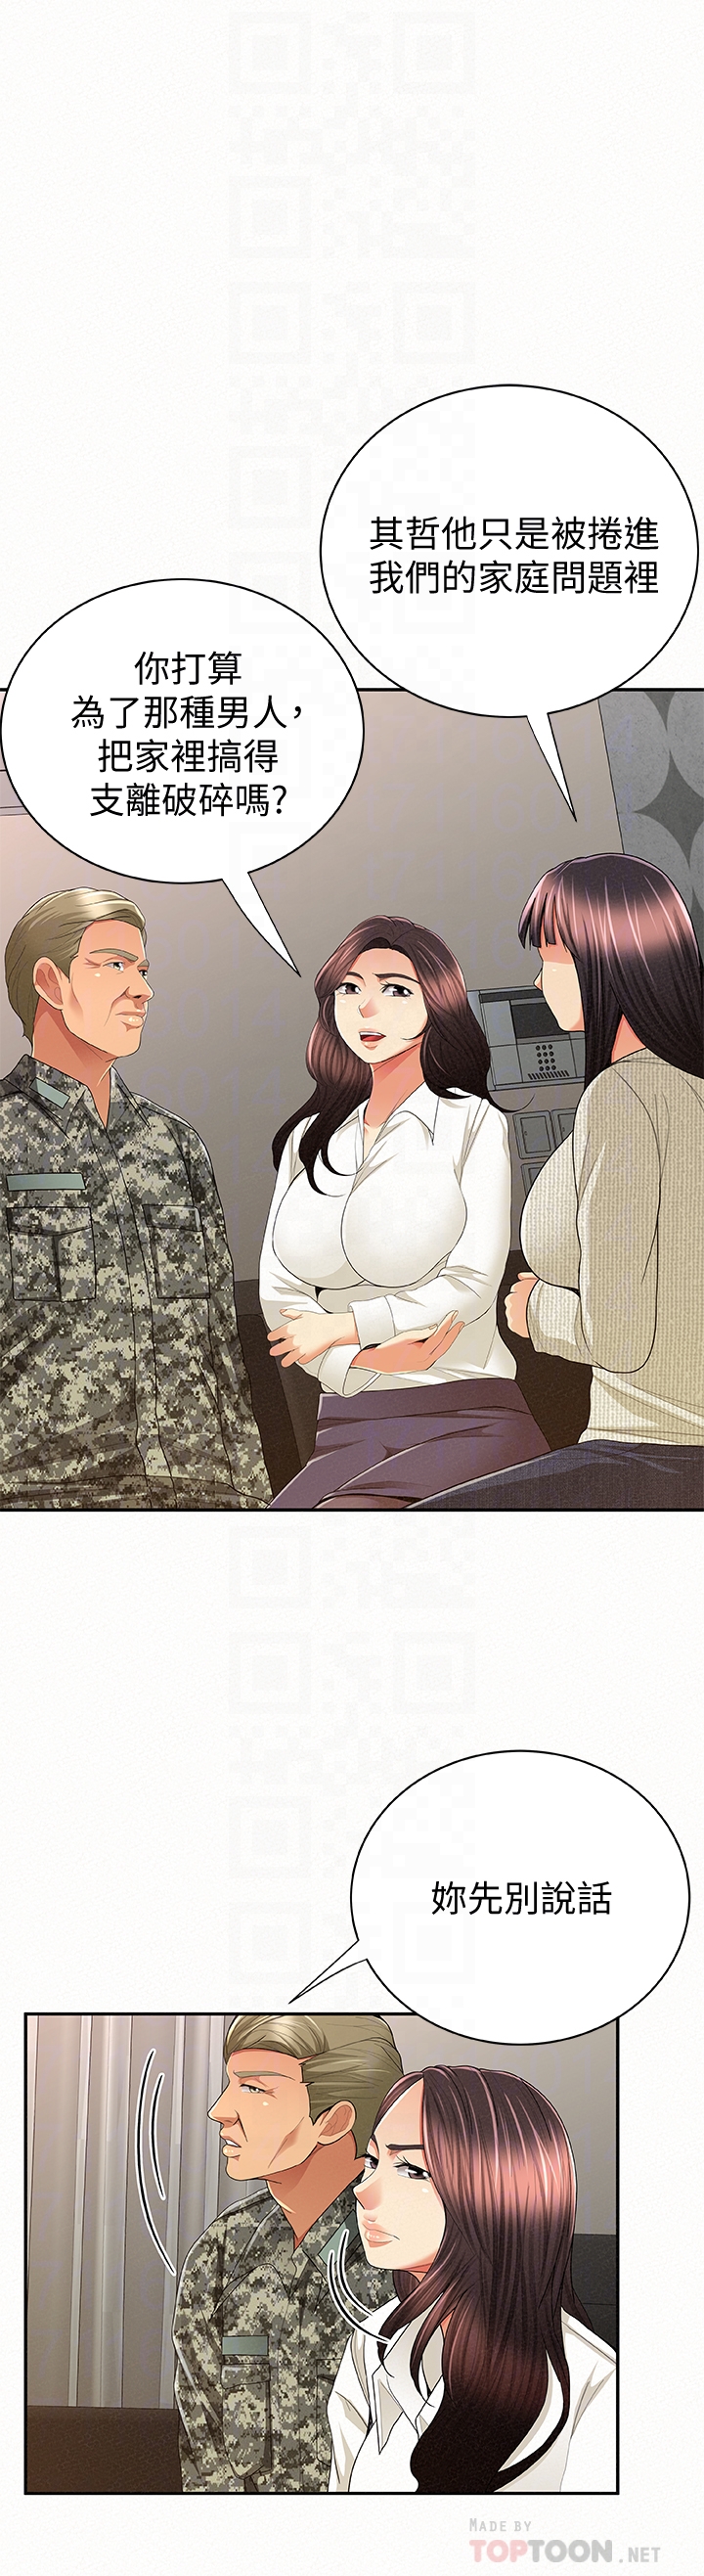 报告夫人  最终话-漫长军人生活的尽头 漫画图片23.jpg